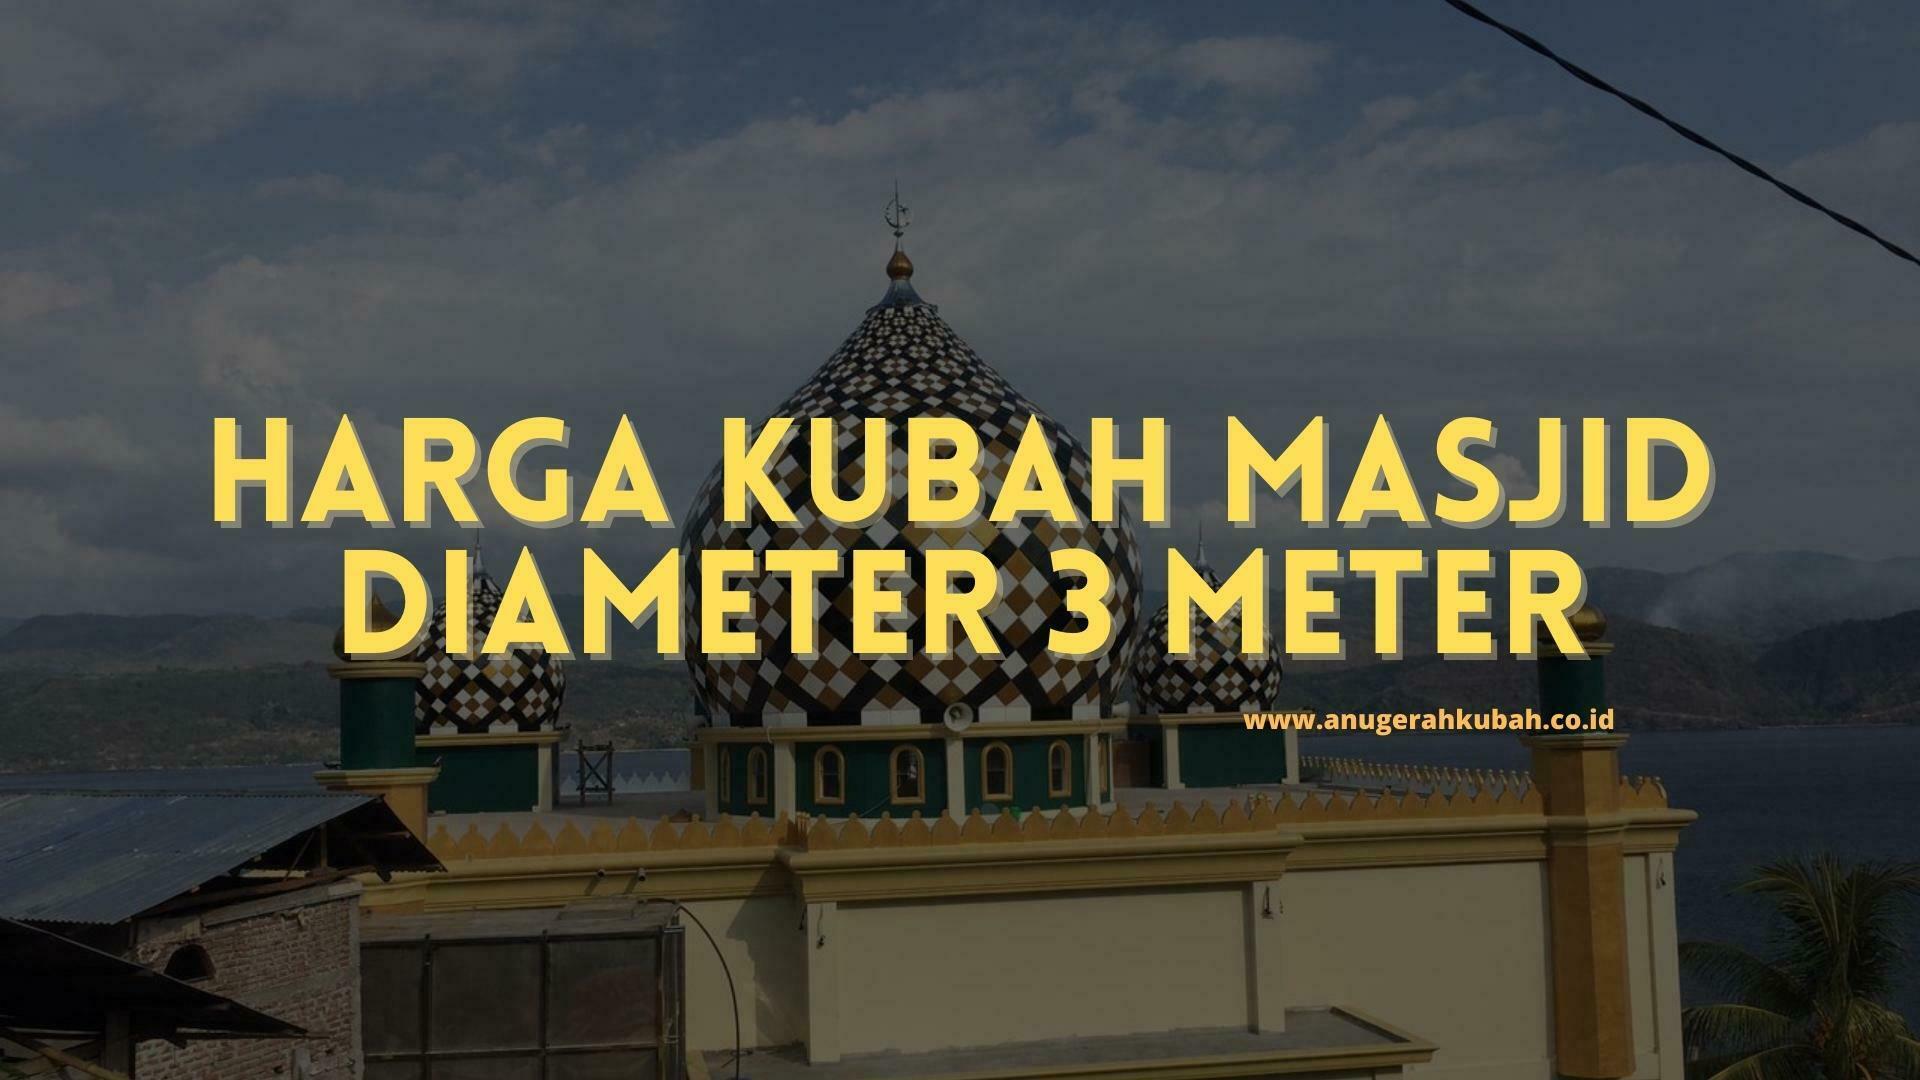 harga kubah masjid diameter 3 meter Harga Kubah Masjid Diameter 3 Meter